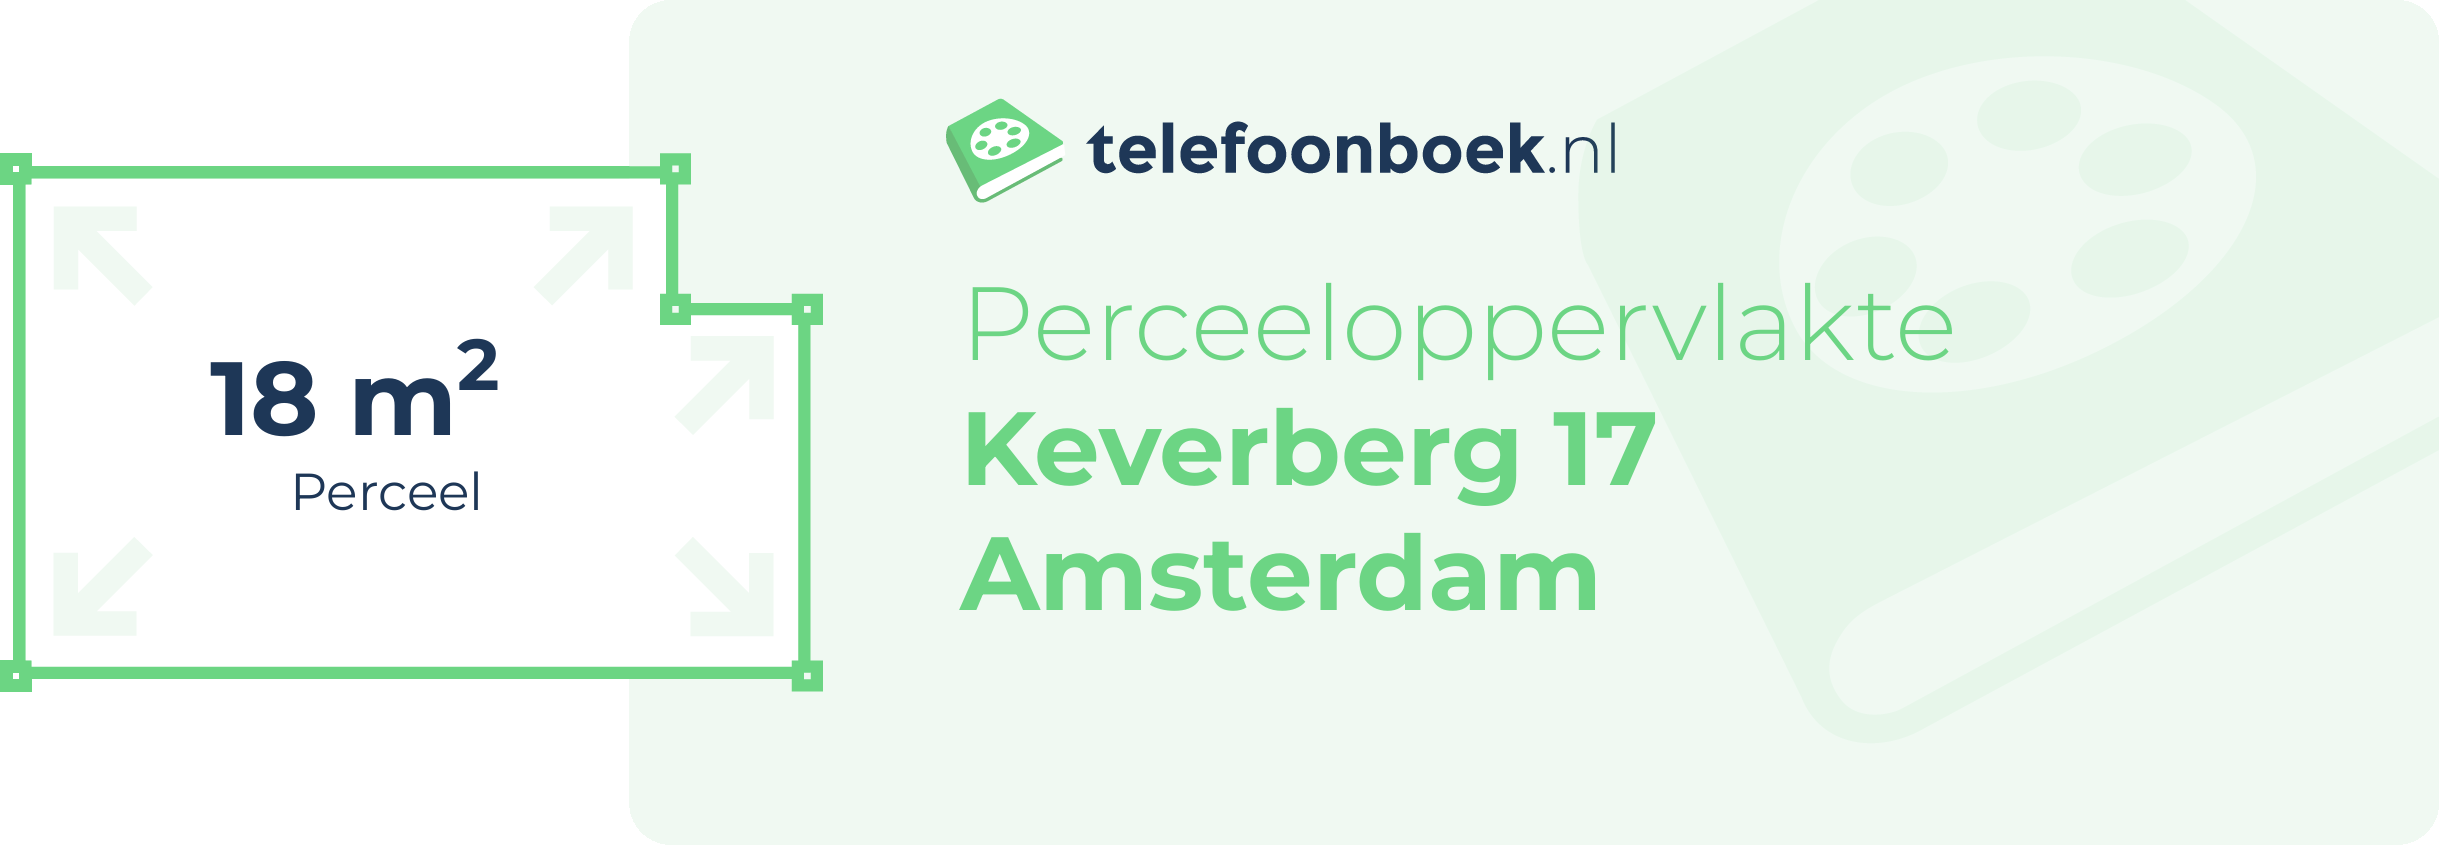 Perceeloppervlakte Keverberg 17 Amsterdam